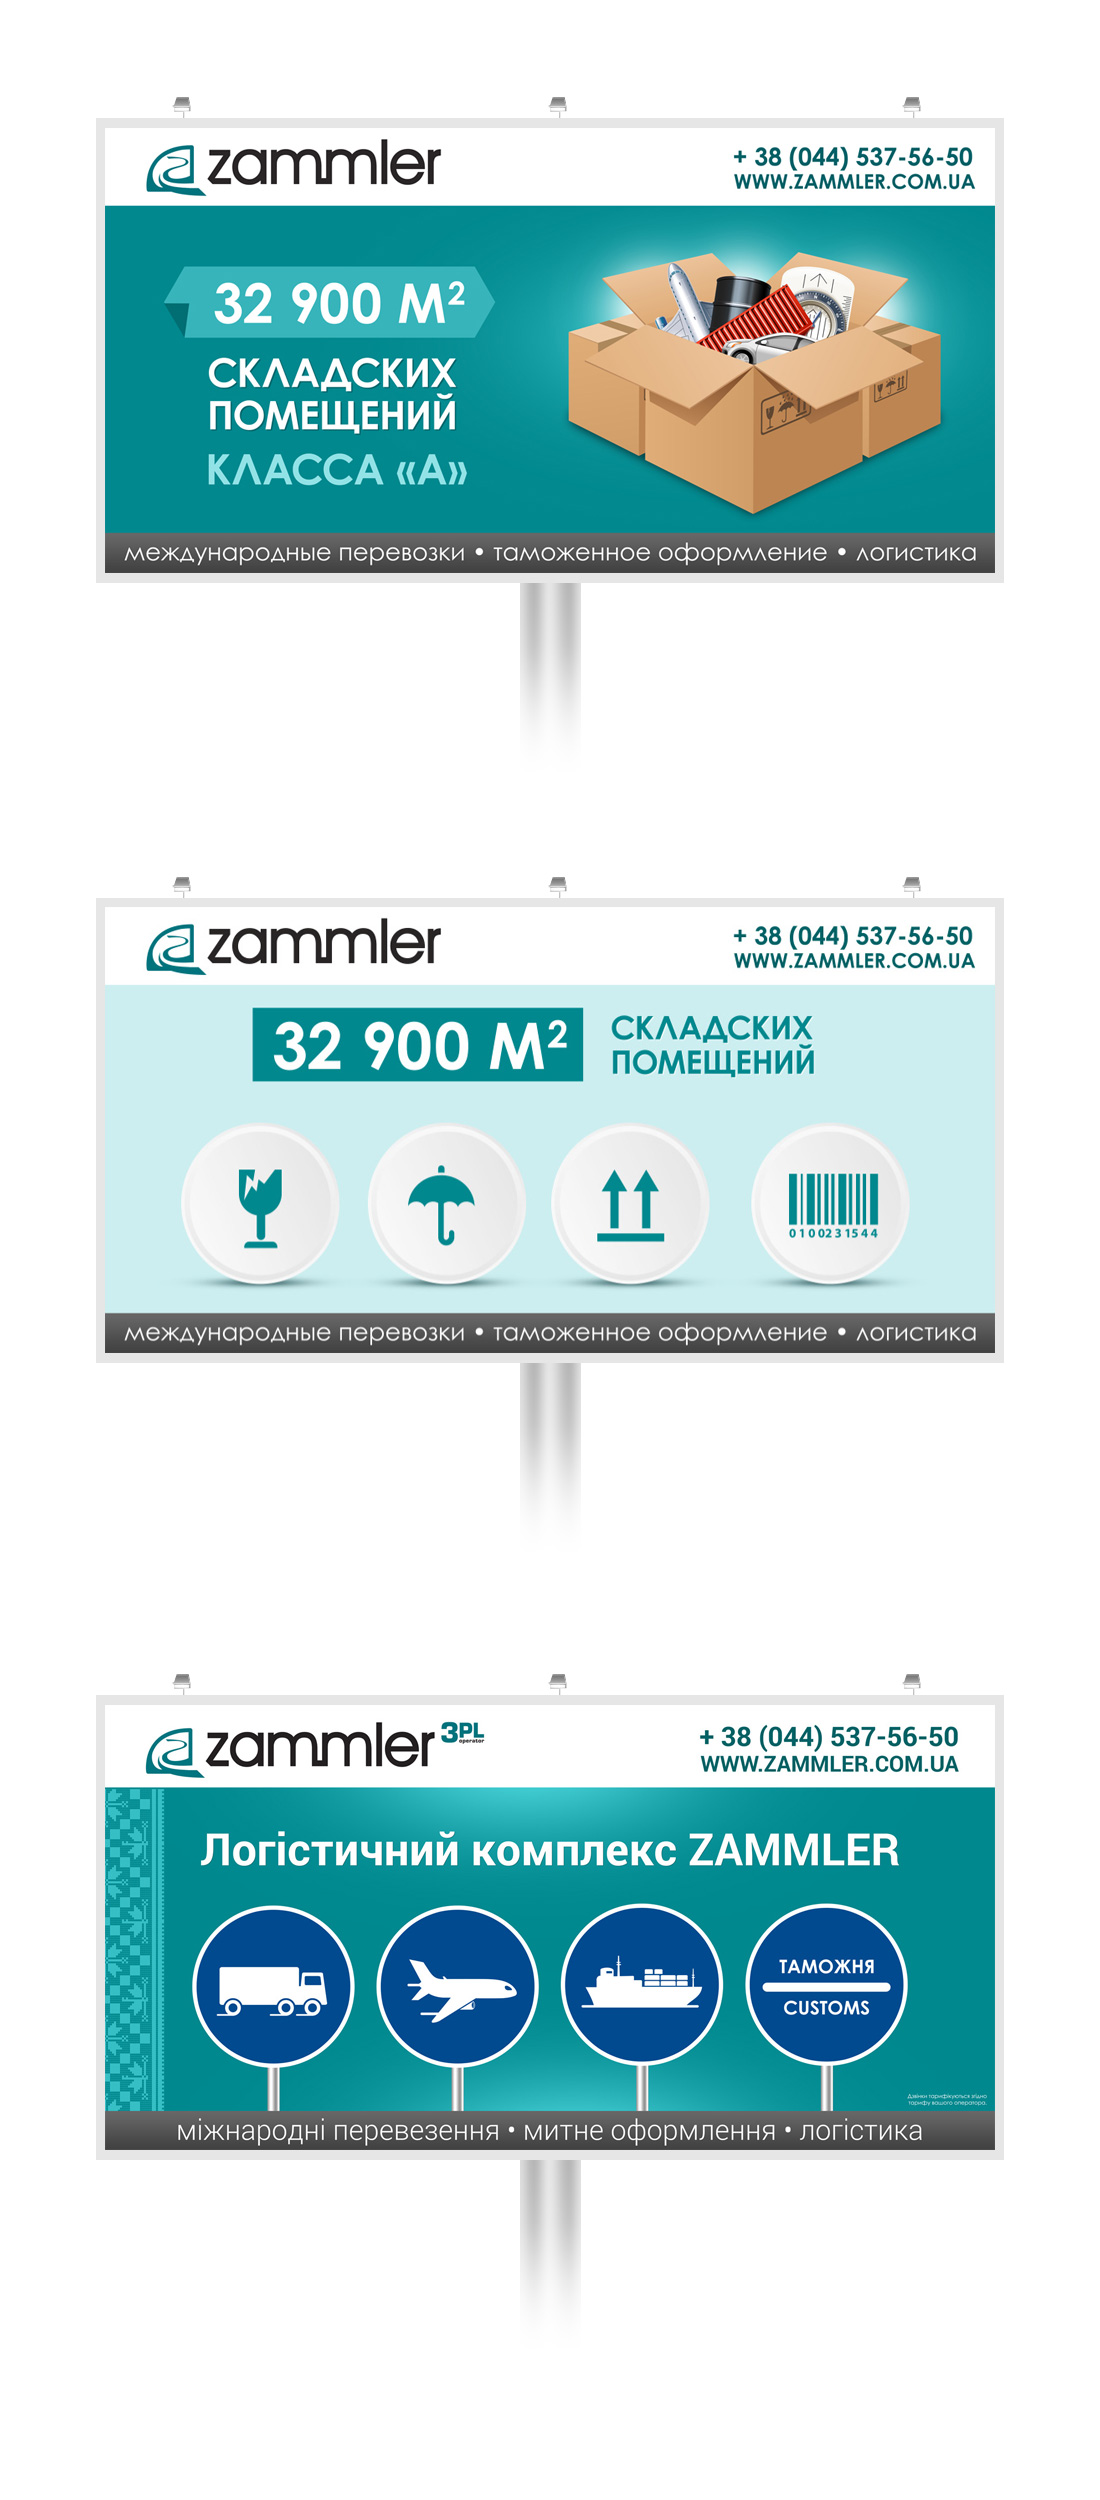 Graphic design of billboards for Zammler